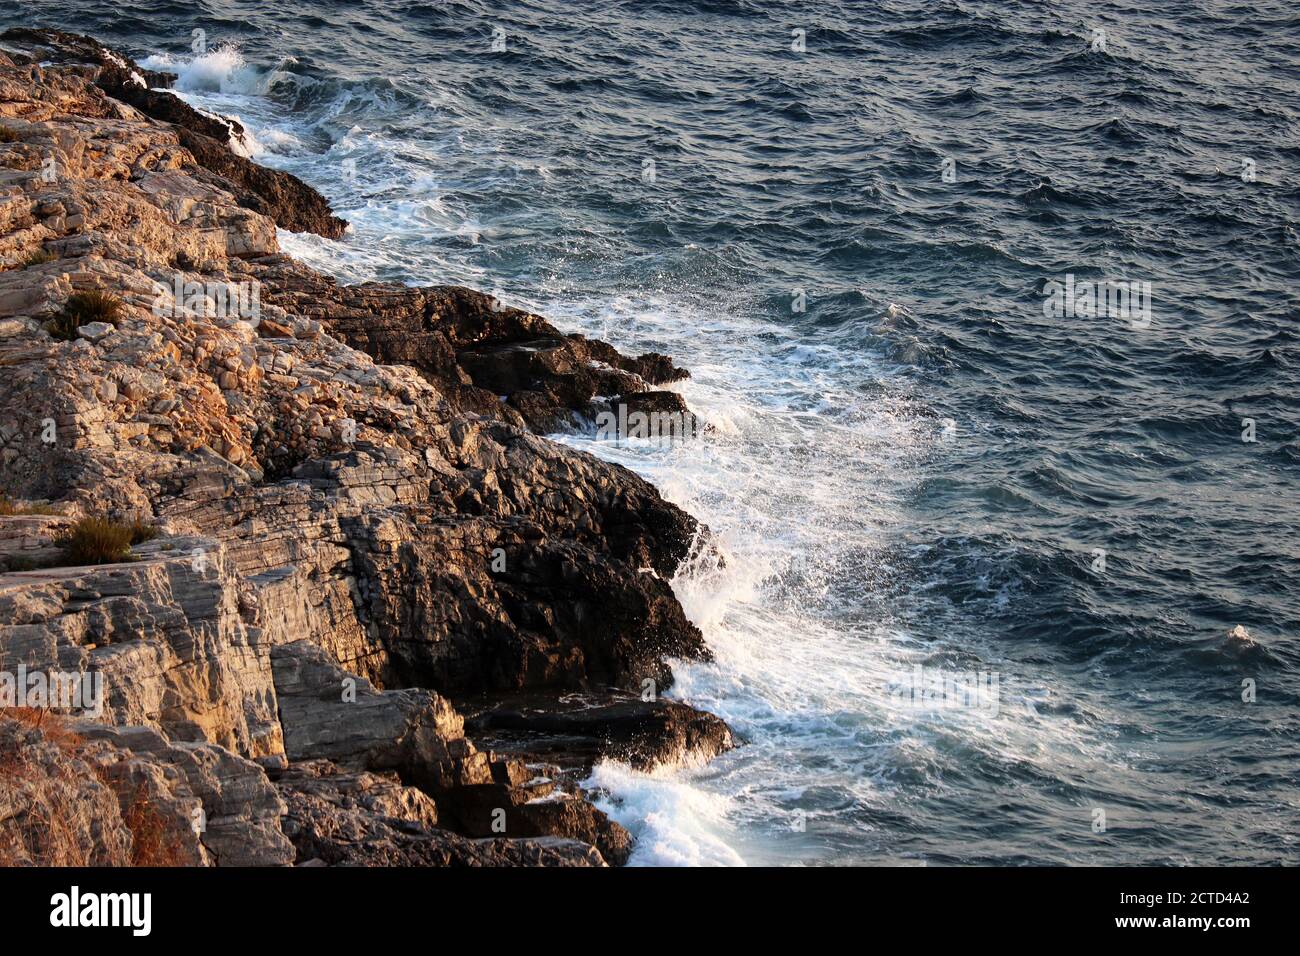 Les vagues se brisent sur les rochers sur le bord de mer avec des éclaboussures blanches. Eau mousseuse bleue sur une pierre, fond de mer Banque D'Images